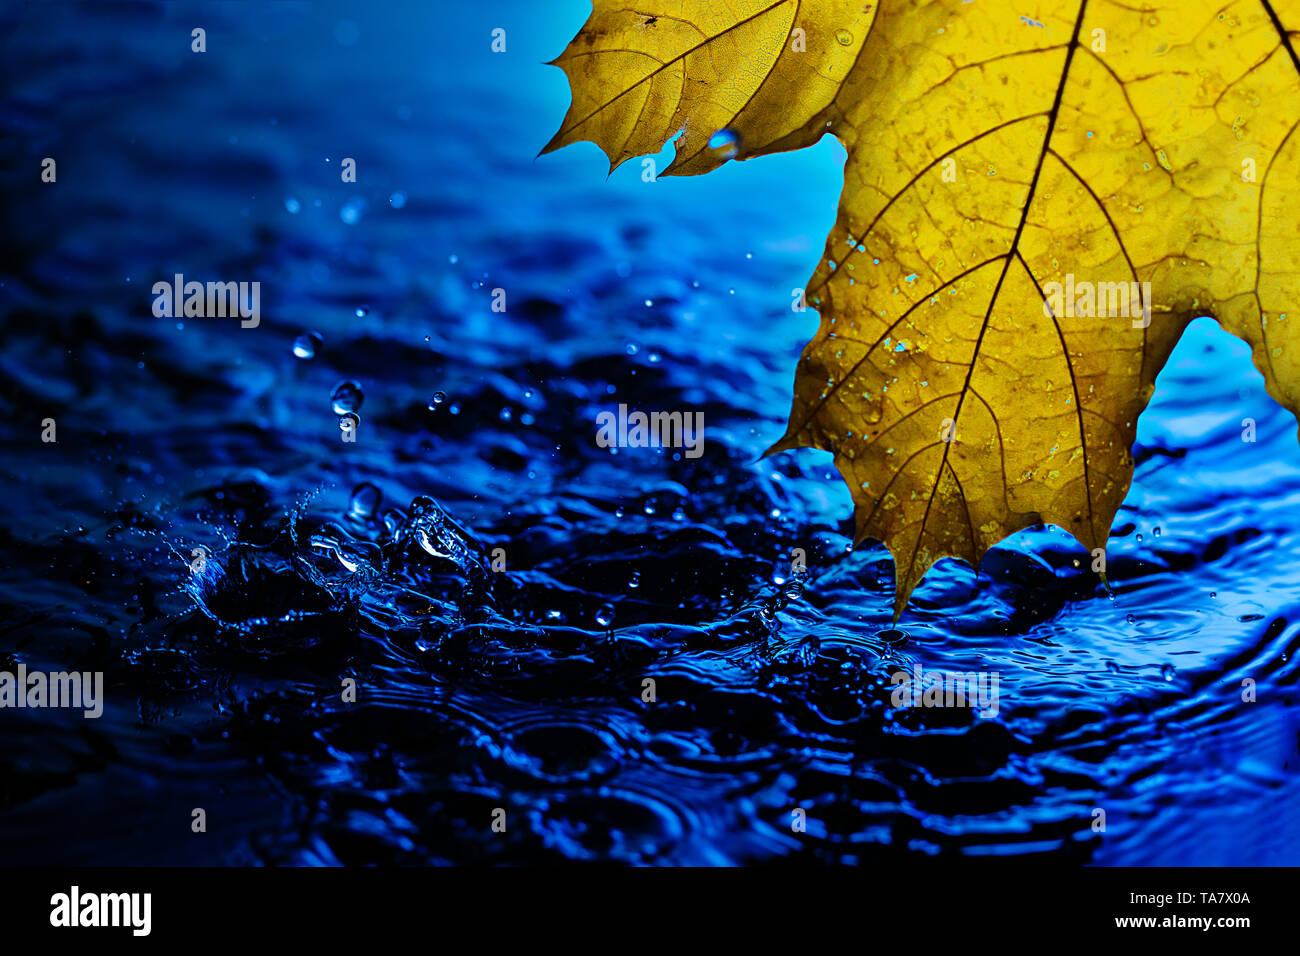 Hintergrundbild für Bildschirmschoner. Gelb Herbst Blatt über blaue Wasser bei Regen. Spritzer und Tropfen Wasser mit blauen Wasser Stockfoto